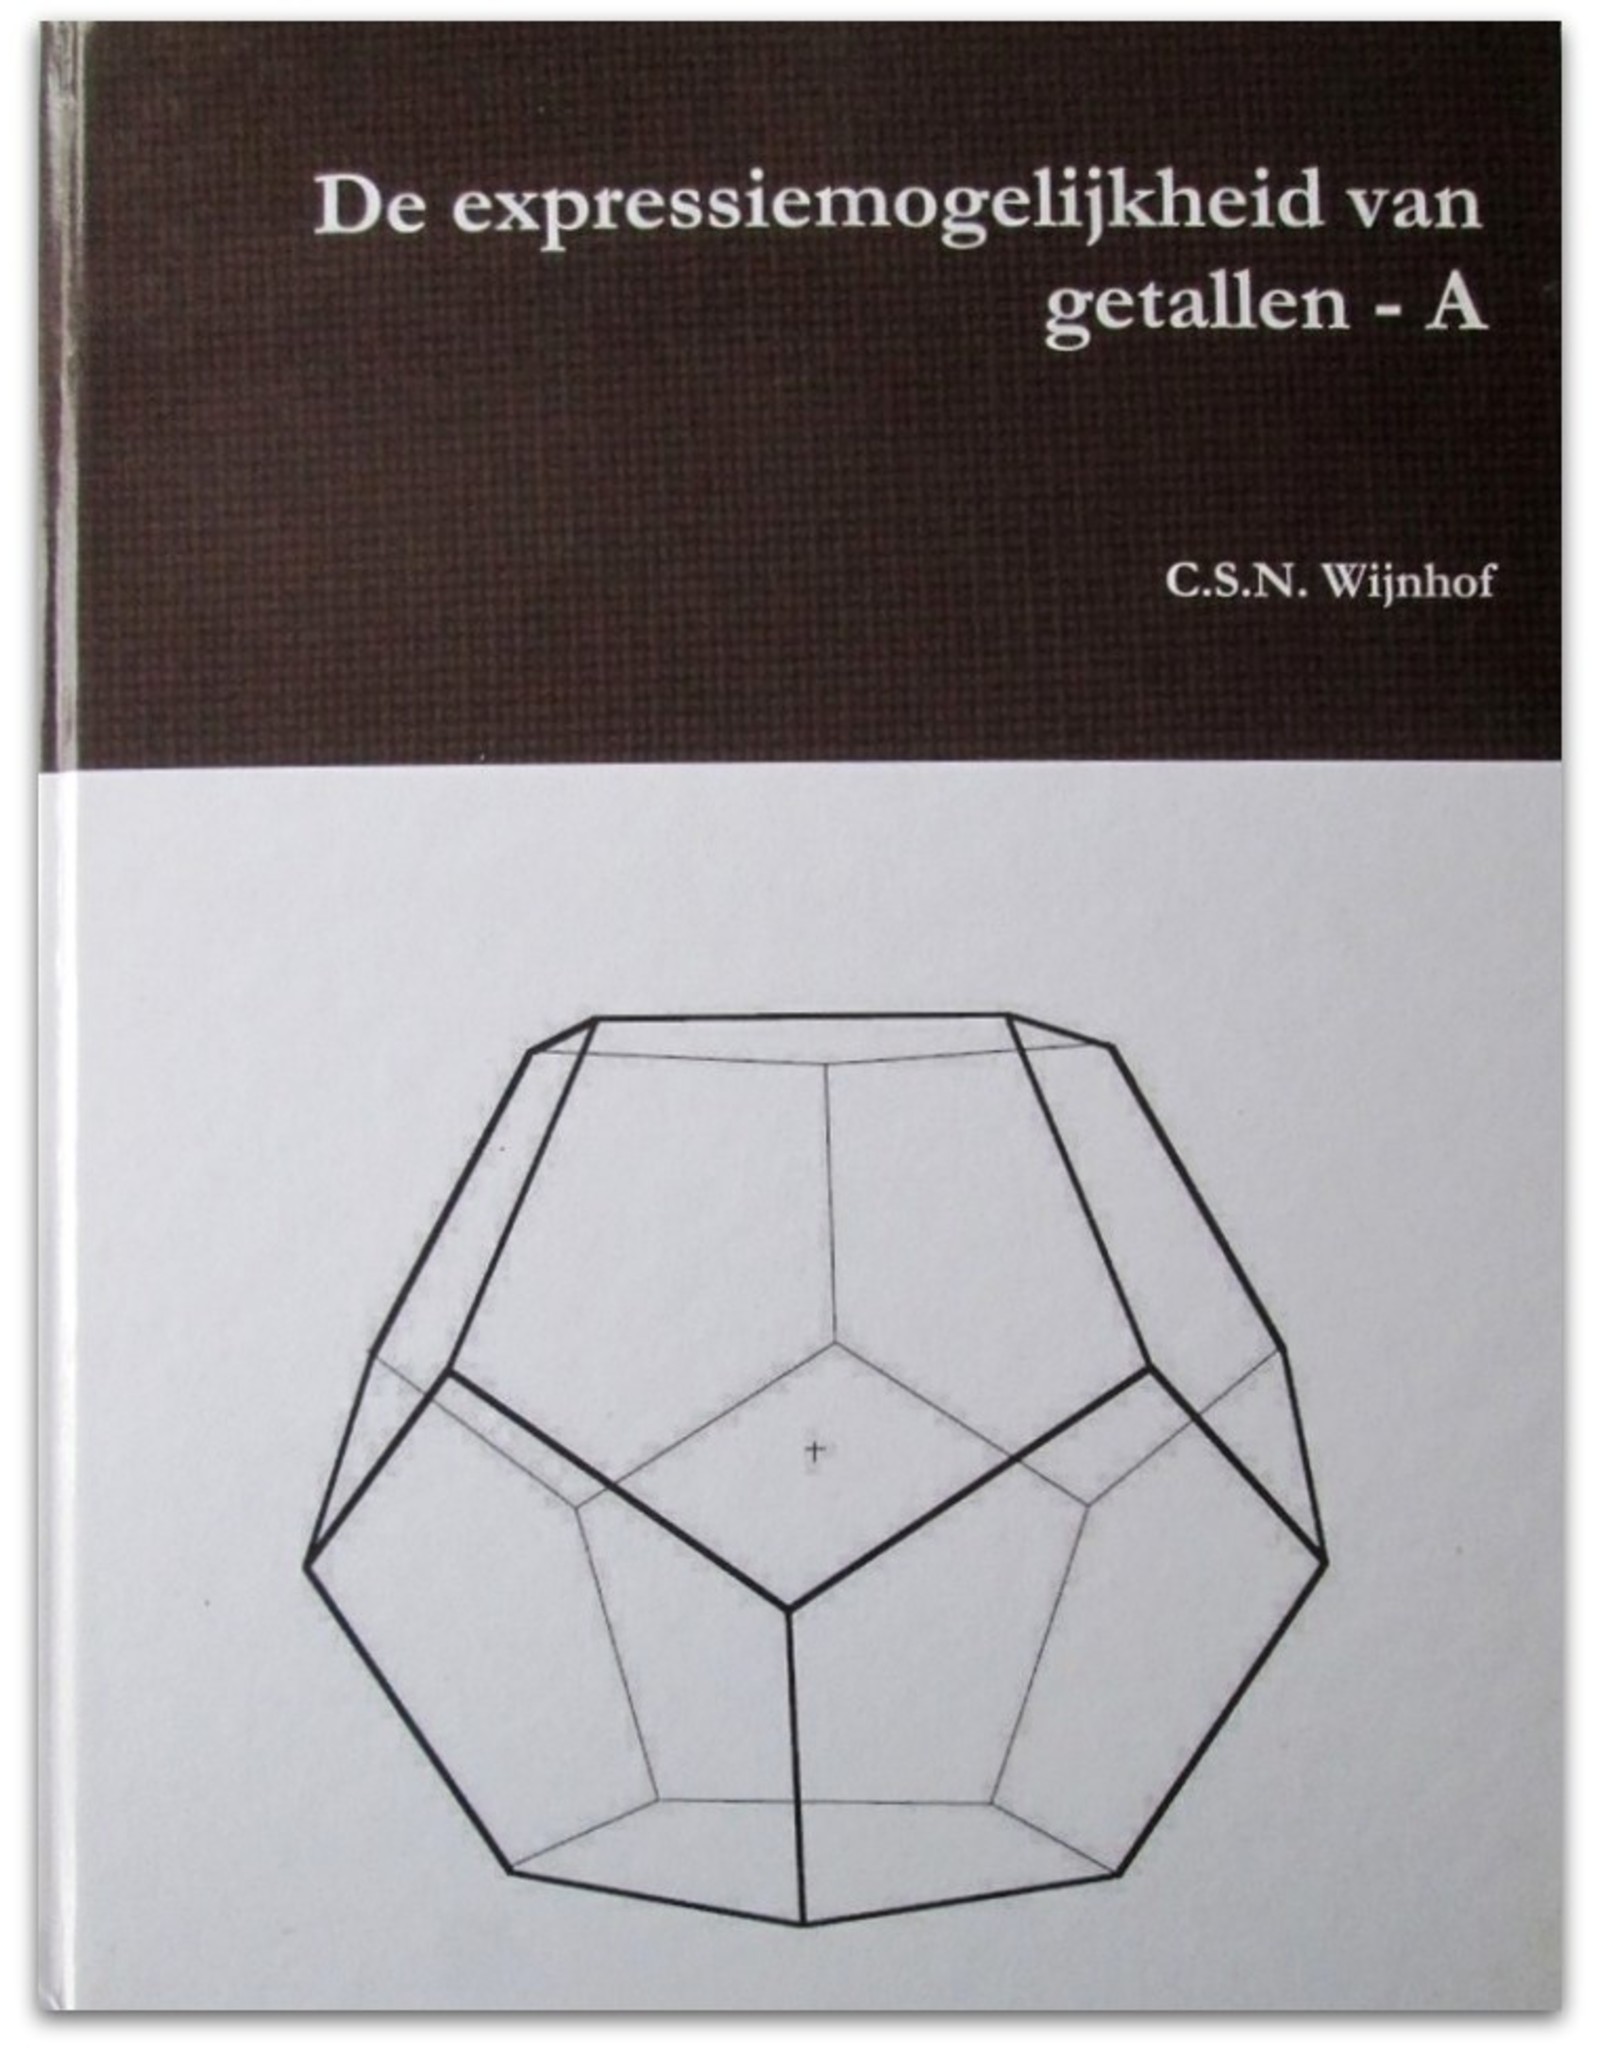 C.S.N. Wijnhof - Merkwaardigheden met betrekking tot de expressiemogelijkheid van getallen ook in de oudheid [Deel A, B & C]